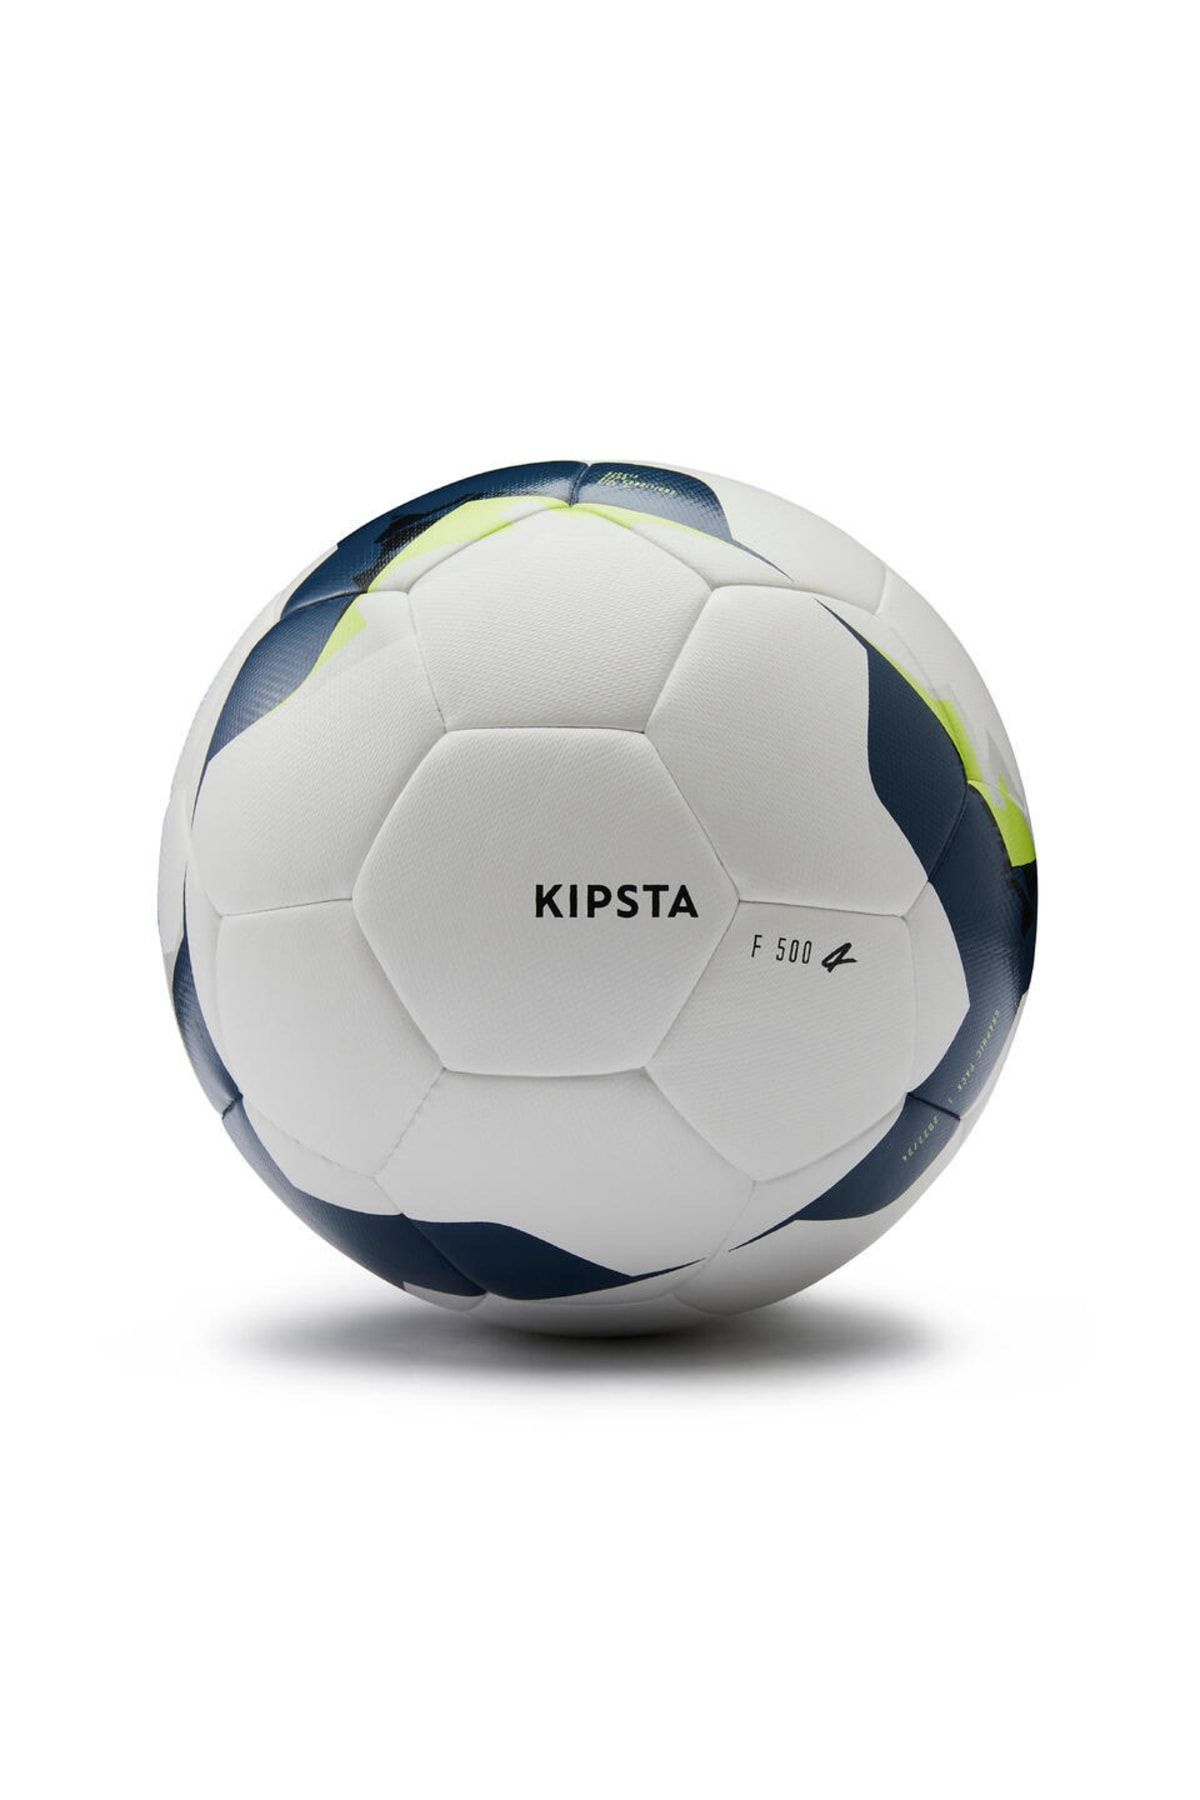 kipsta Fıfa Onaylı F500 Hibrit Futbol Topu - 4 Numara - Beyaz / Sarı